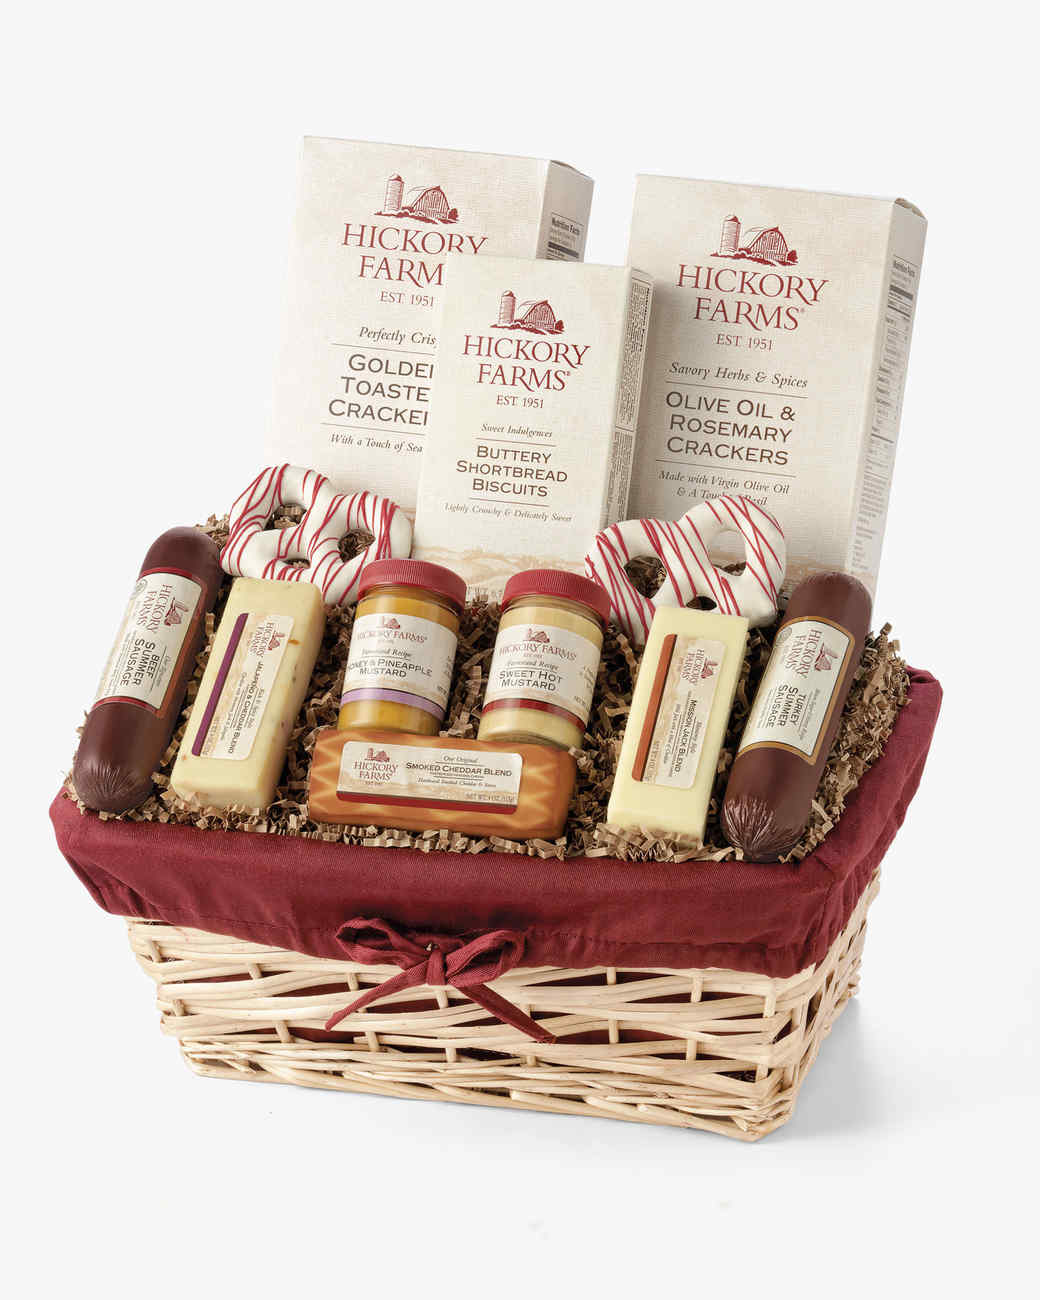 Hickory-farms-family-celebration-deluxe-gift-basket-014202_vert